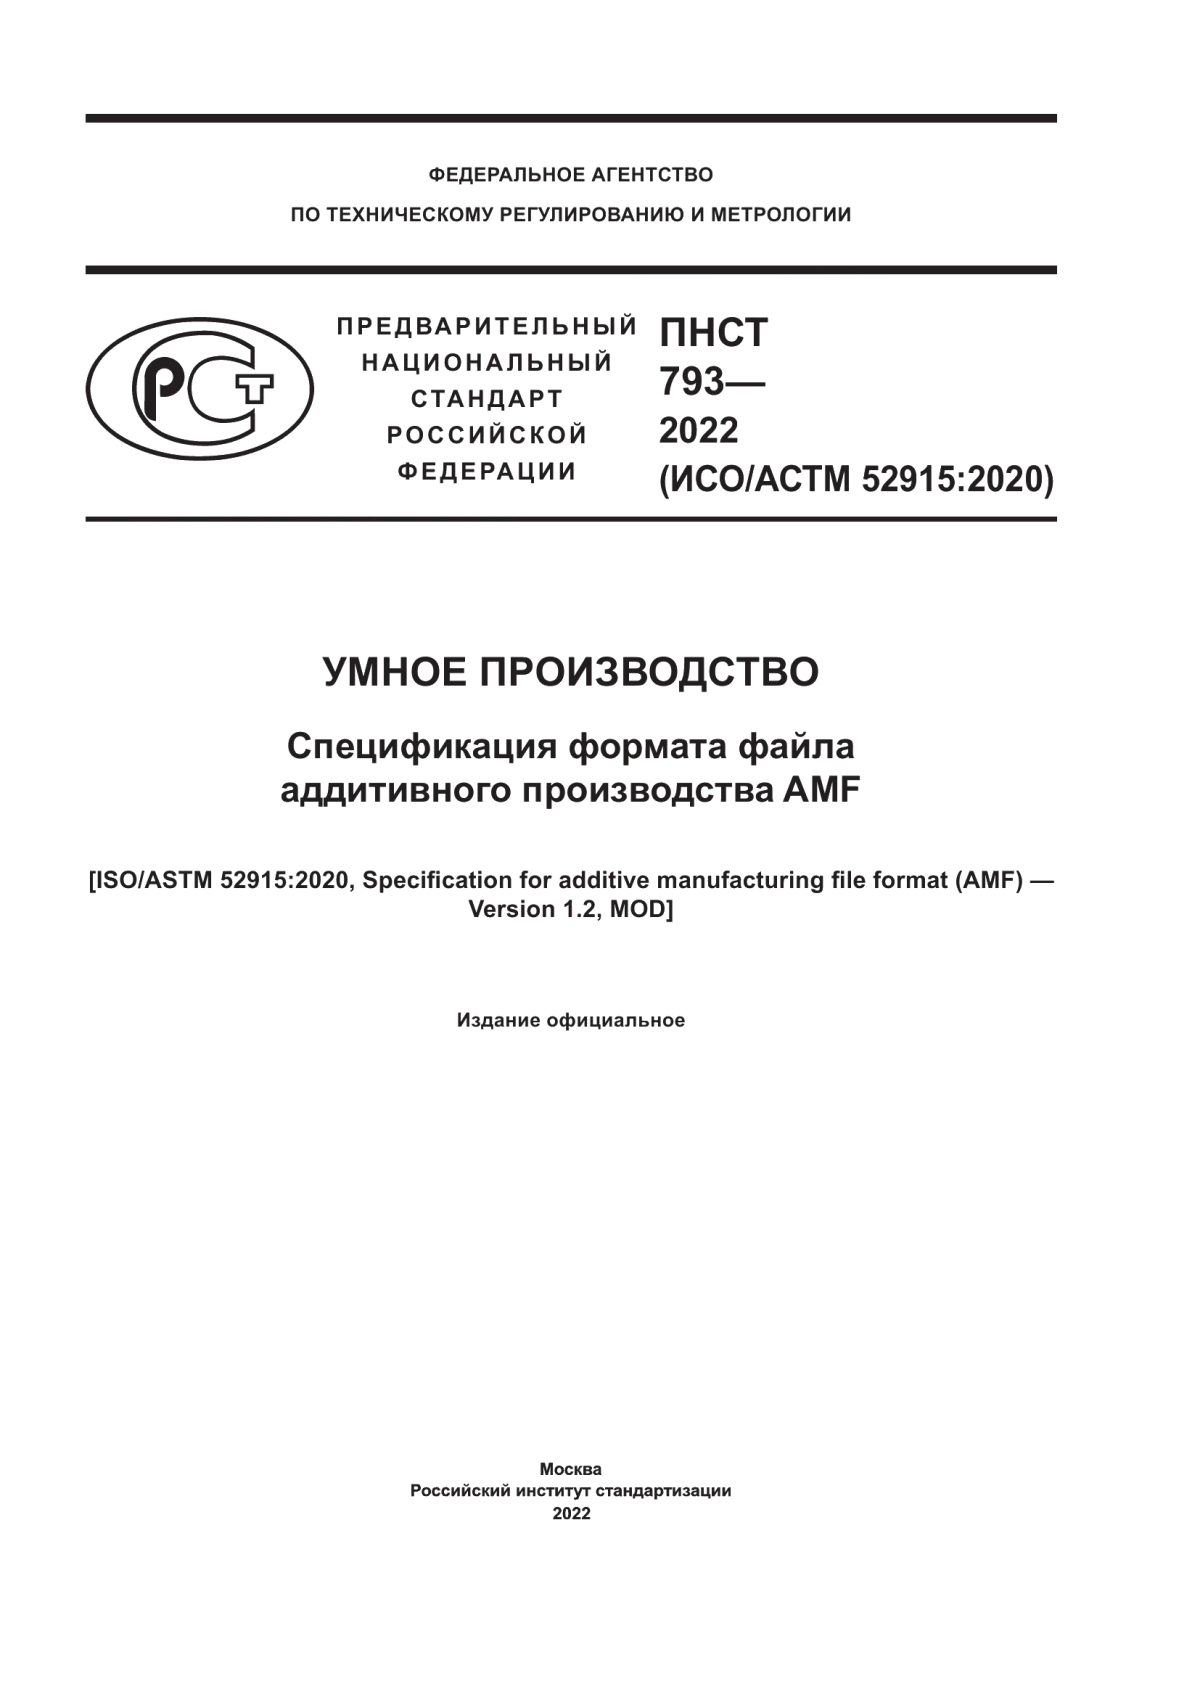 ПНСТ 793-2022 Умное производство. Спецификация формата файла аддитивного производства AMF